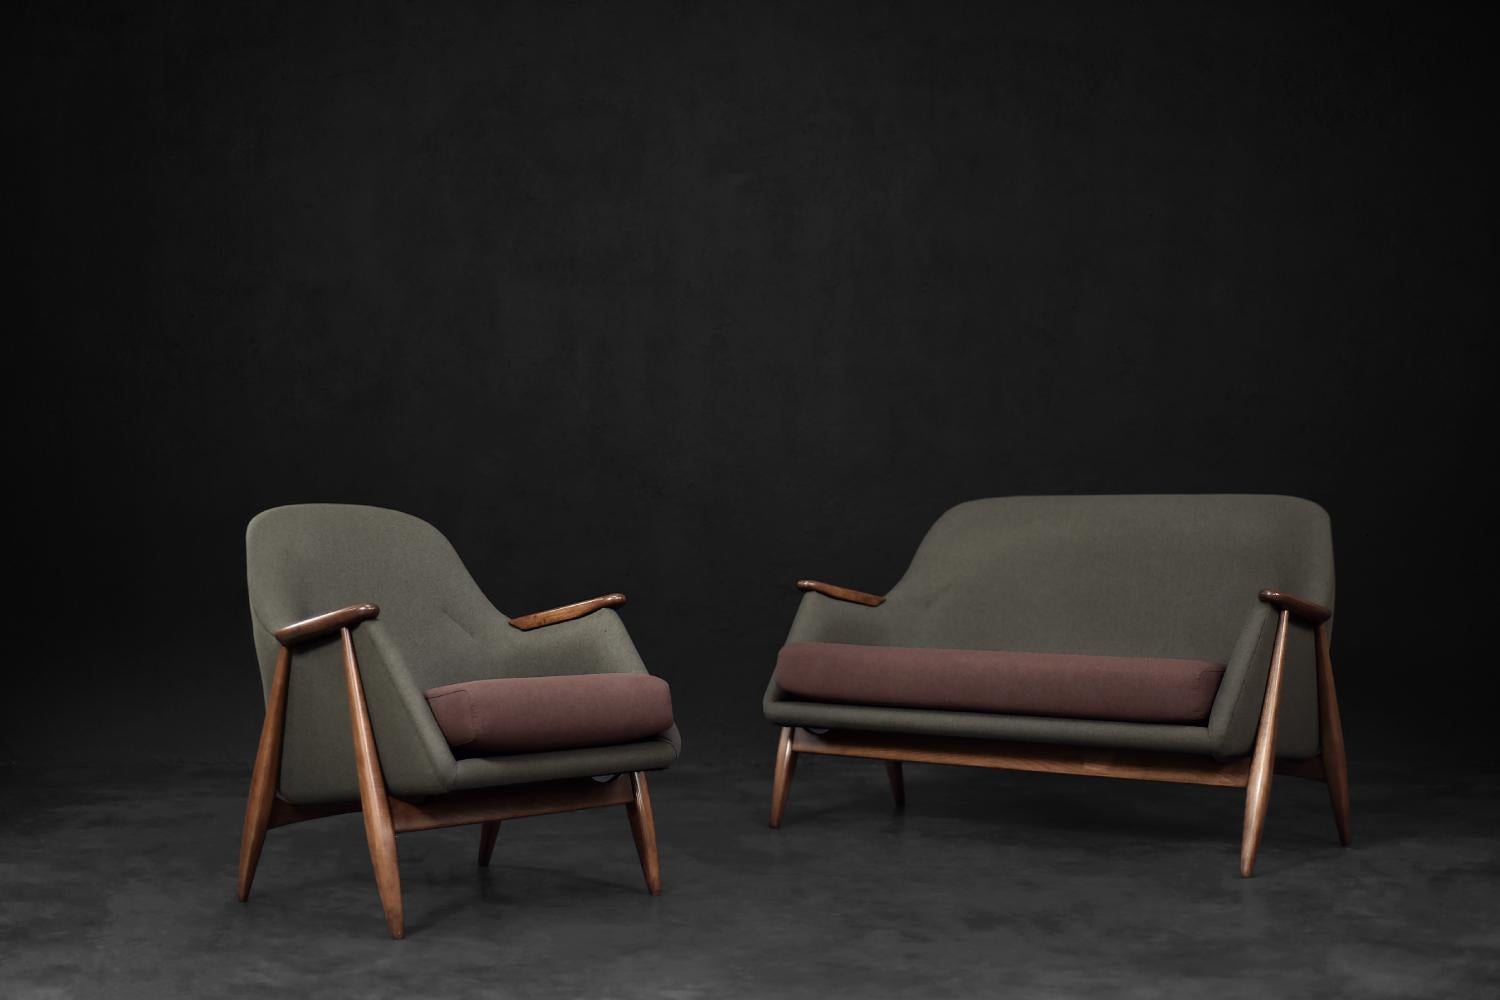 Dieses spektakuläre Pallas Lounge-Set wurde 1954 von dem schwedischen Designer Svante Skogh entworfen und ist ein seltenes Beispiel aus dem Repertoire des modernistischen Designs. Die Garnitur Pallas wurde für den finnischen Hersteller Asko